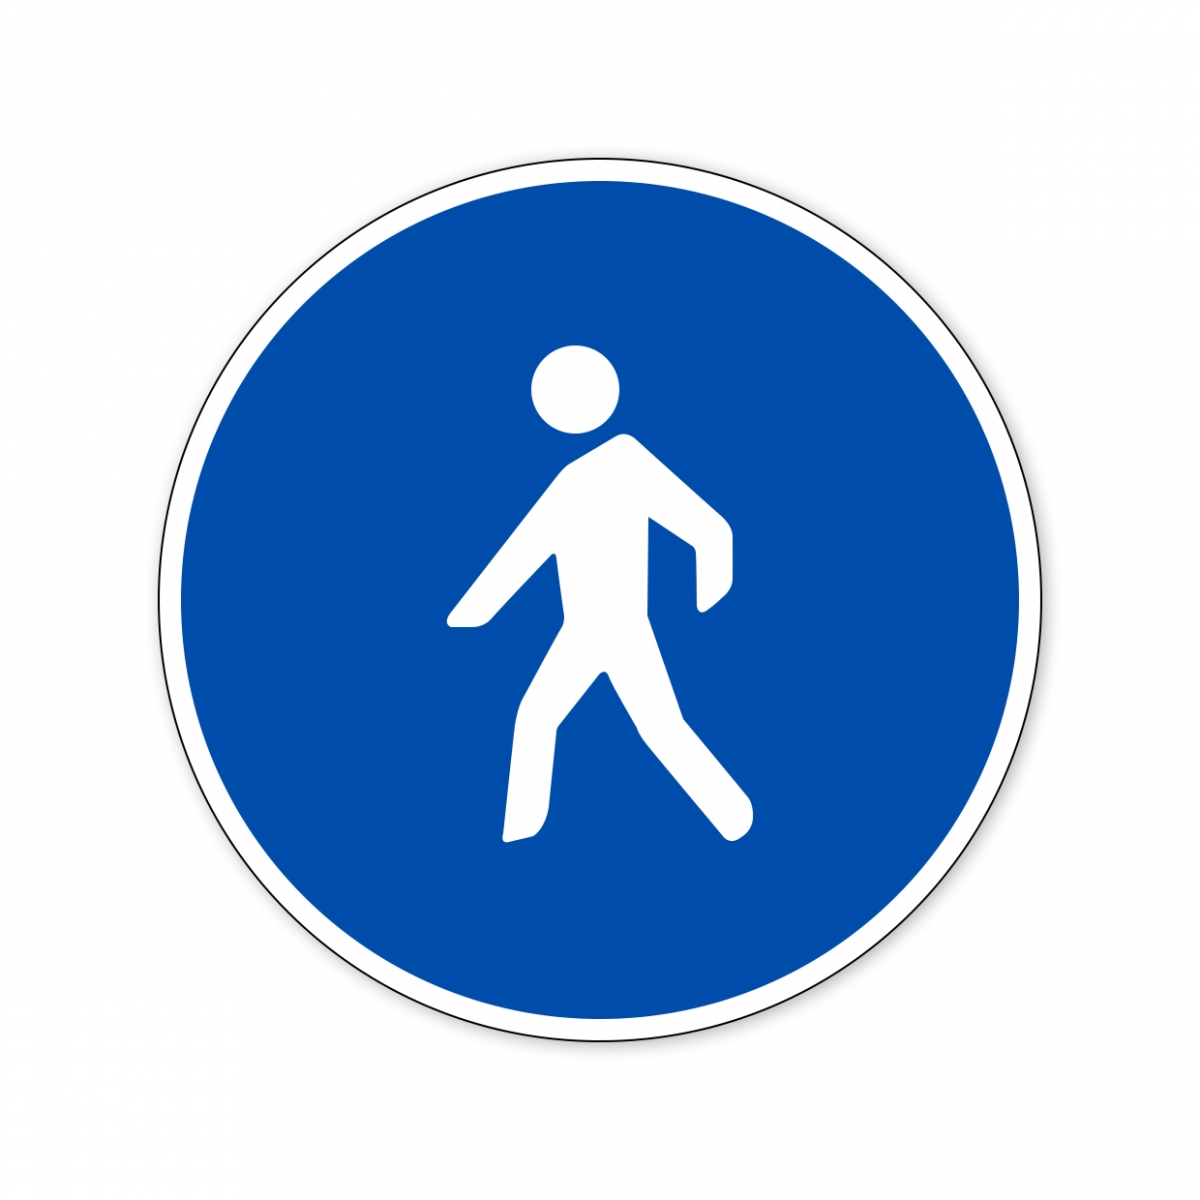 Imagen en la que se ve una señal de camino reservado para peatones